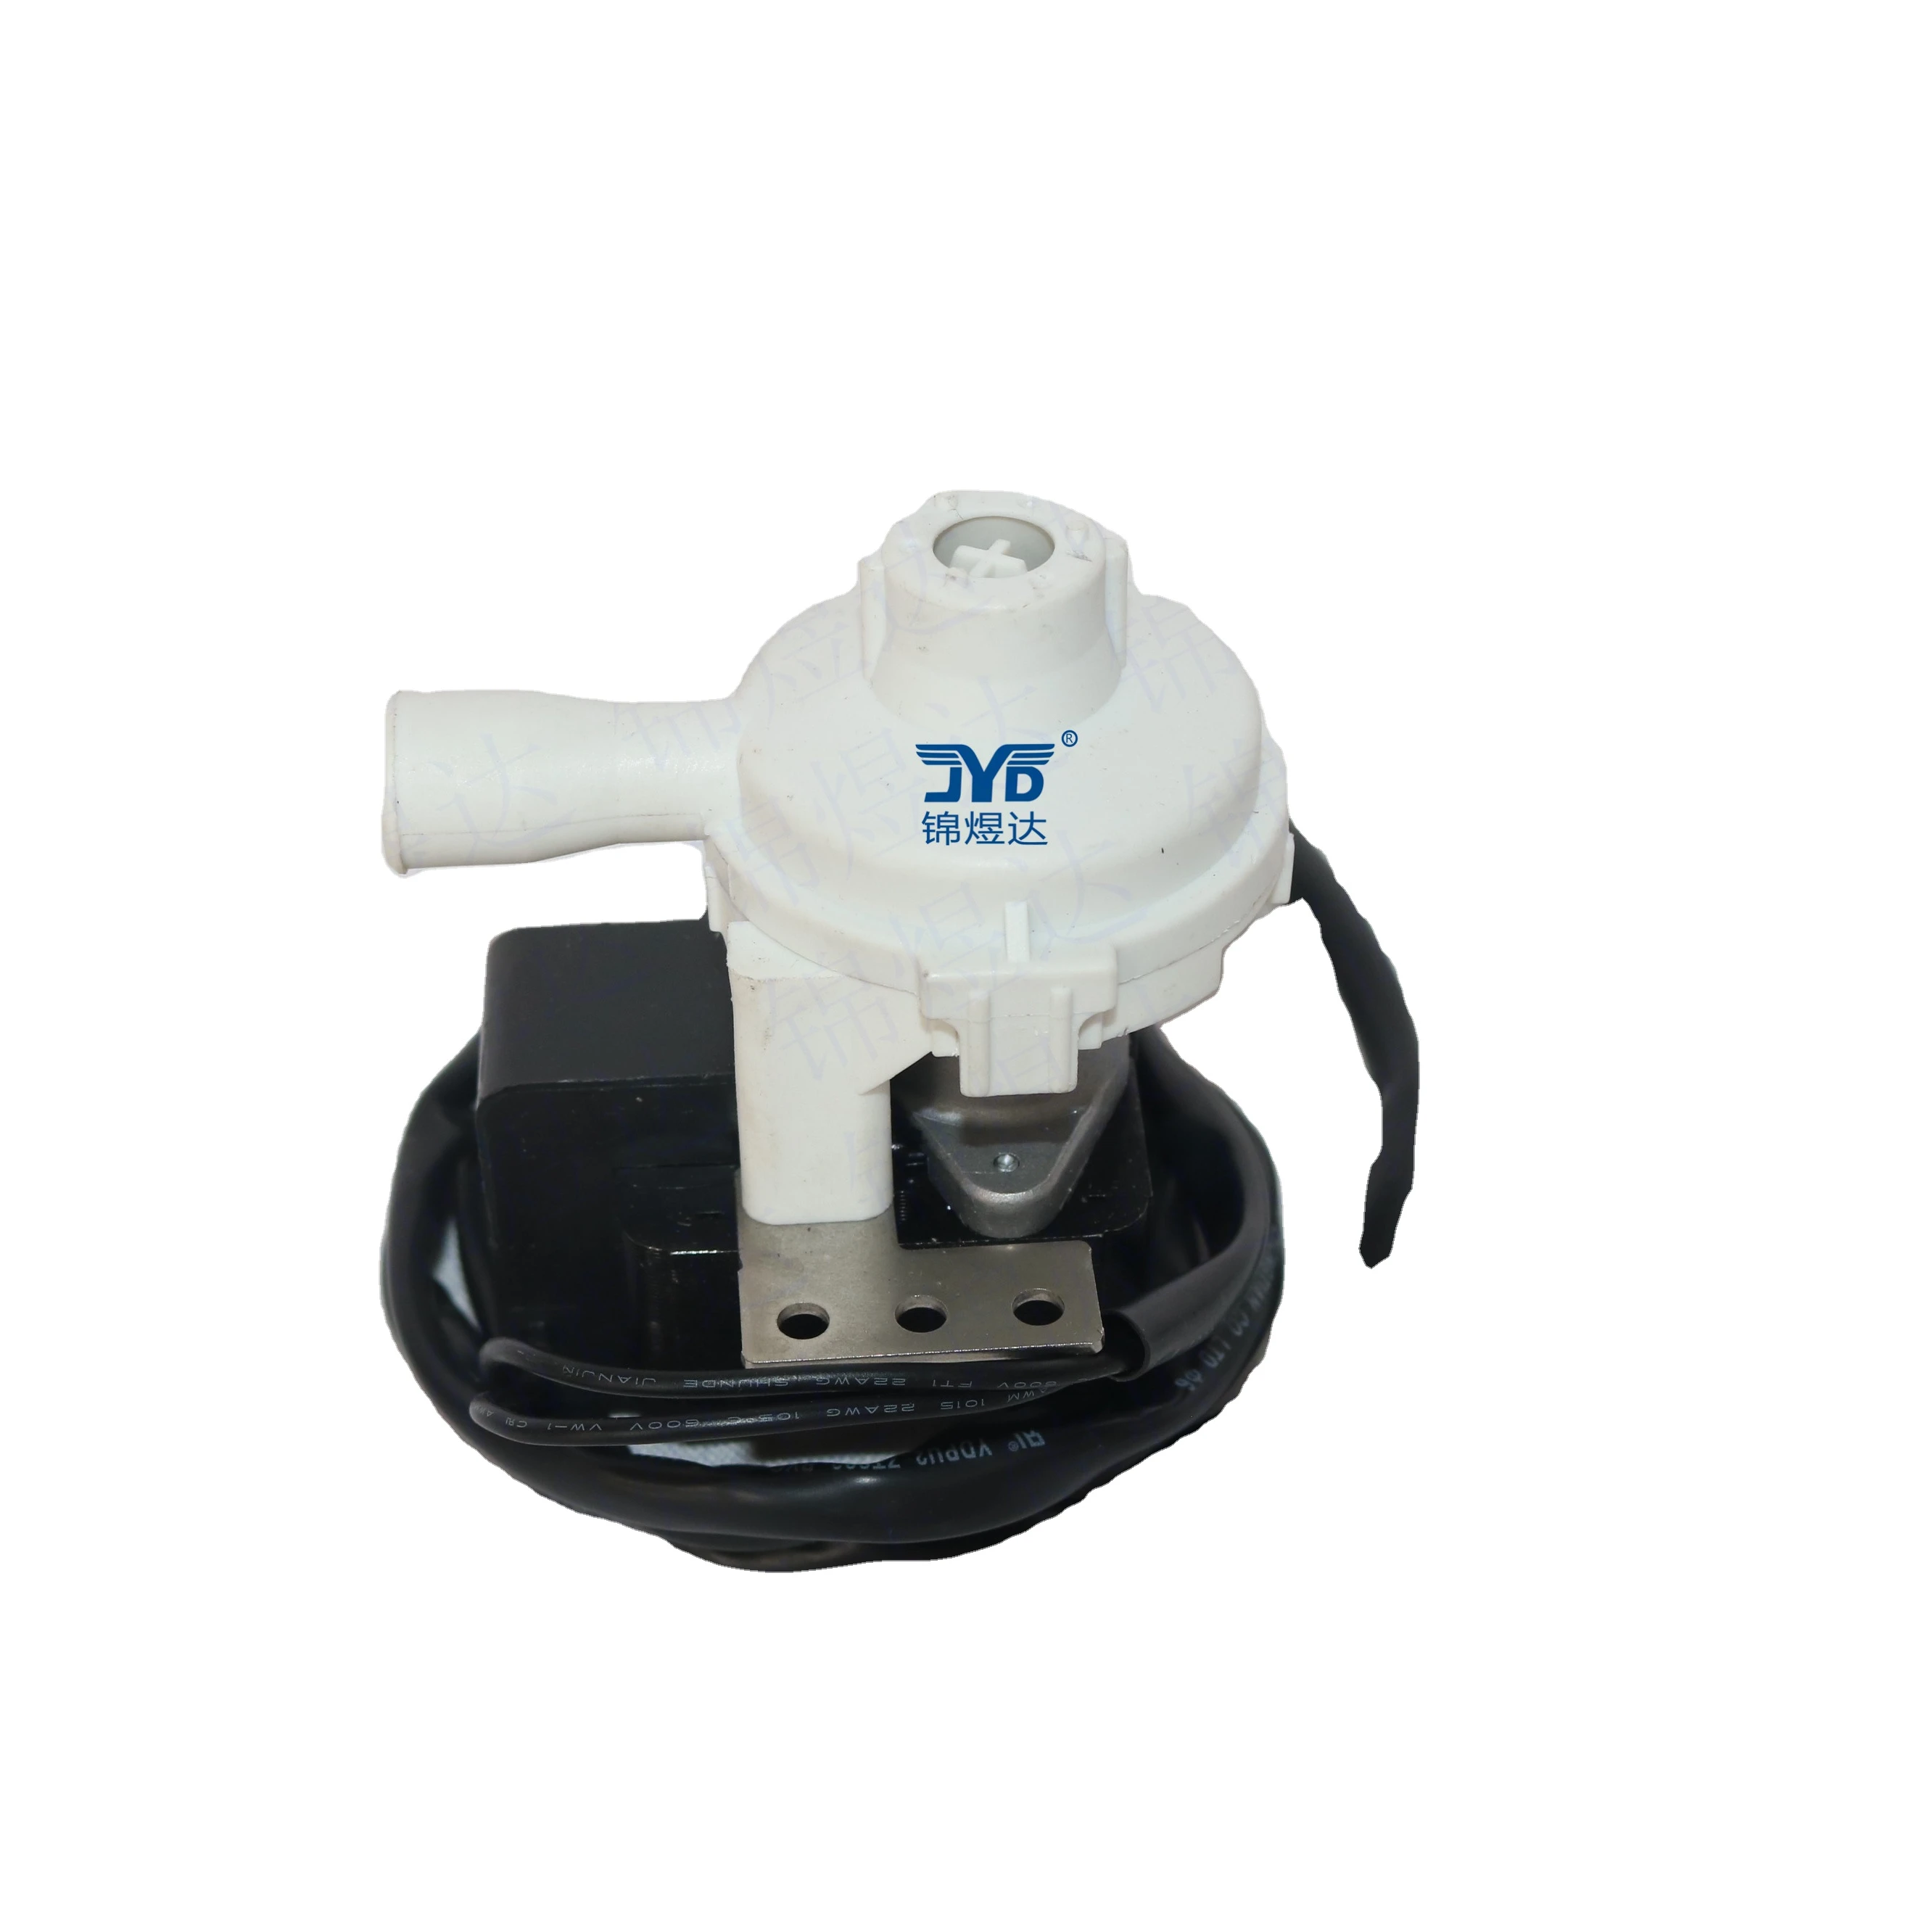 Trane Parts Ceiling Machine Drain Pump PLD-12 17400802000015